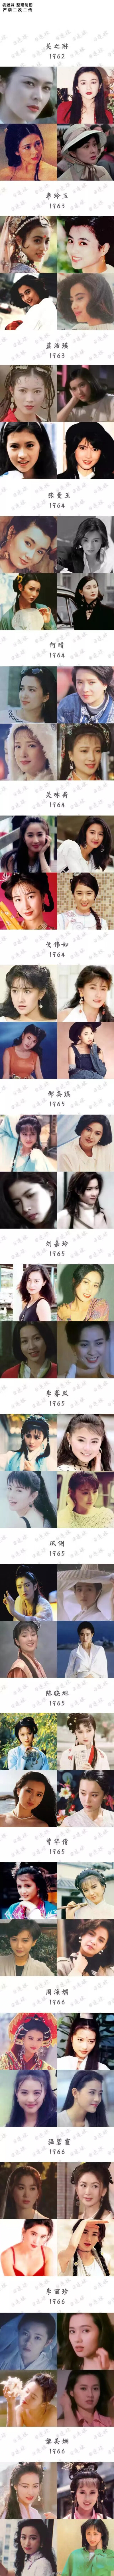 150位华人女演员（1950—1999年出生）颜值一览表
不仅是审美的变迁，更是时尚的轮回